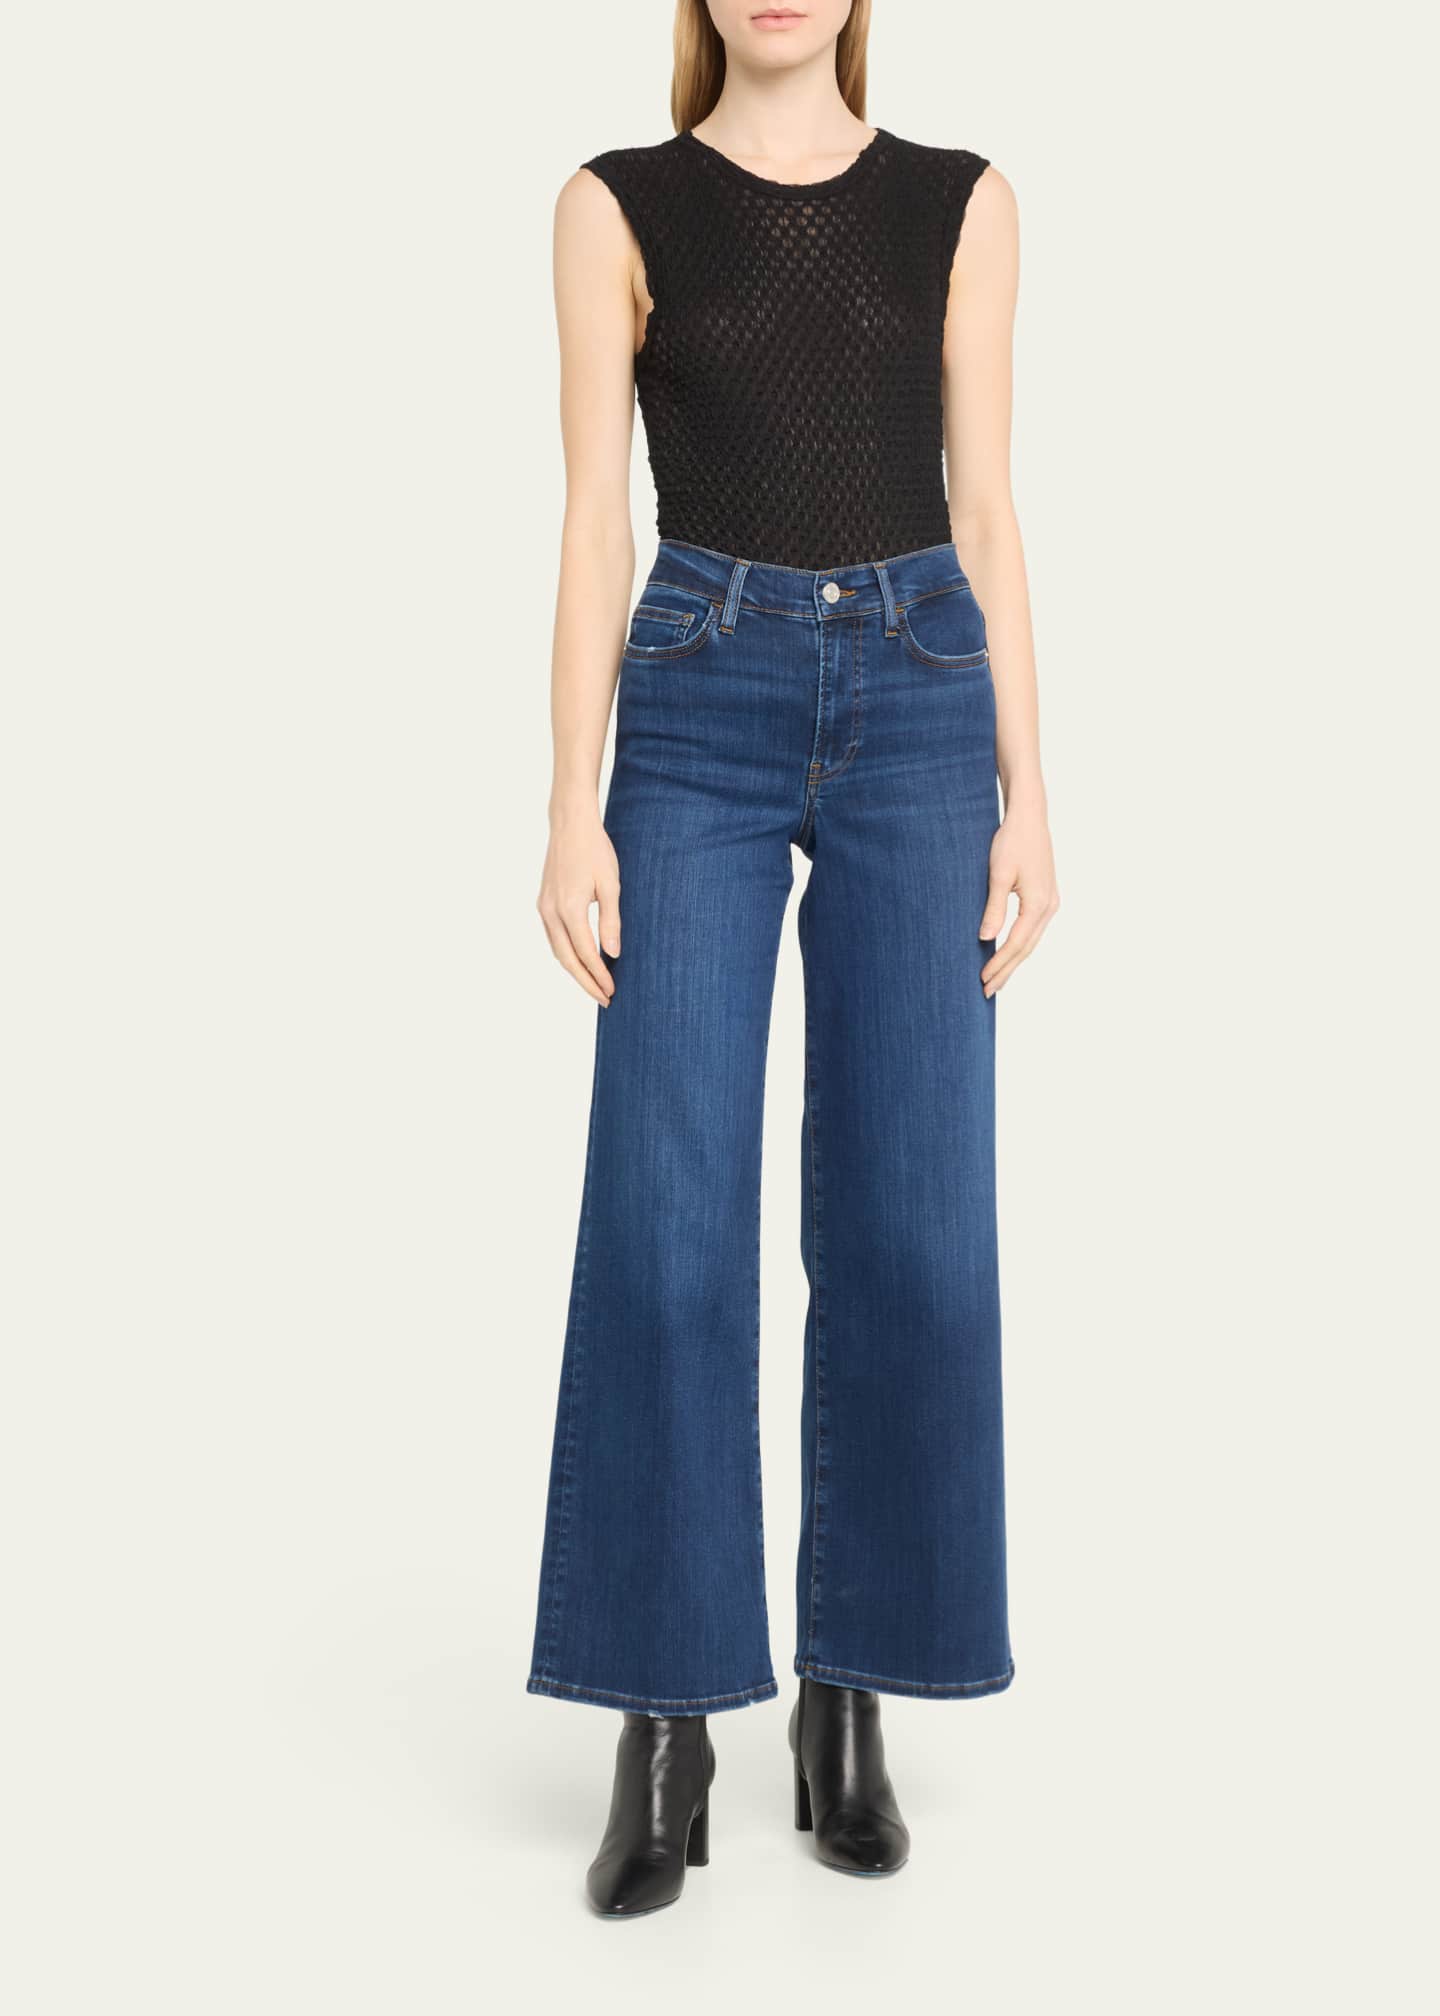  LEWGEL Women's Jeans High Waist Flap Pocket Side Cargo